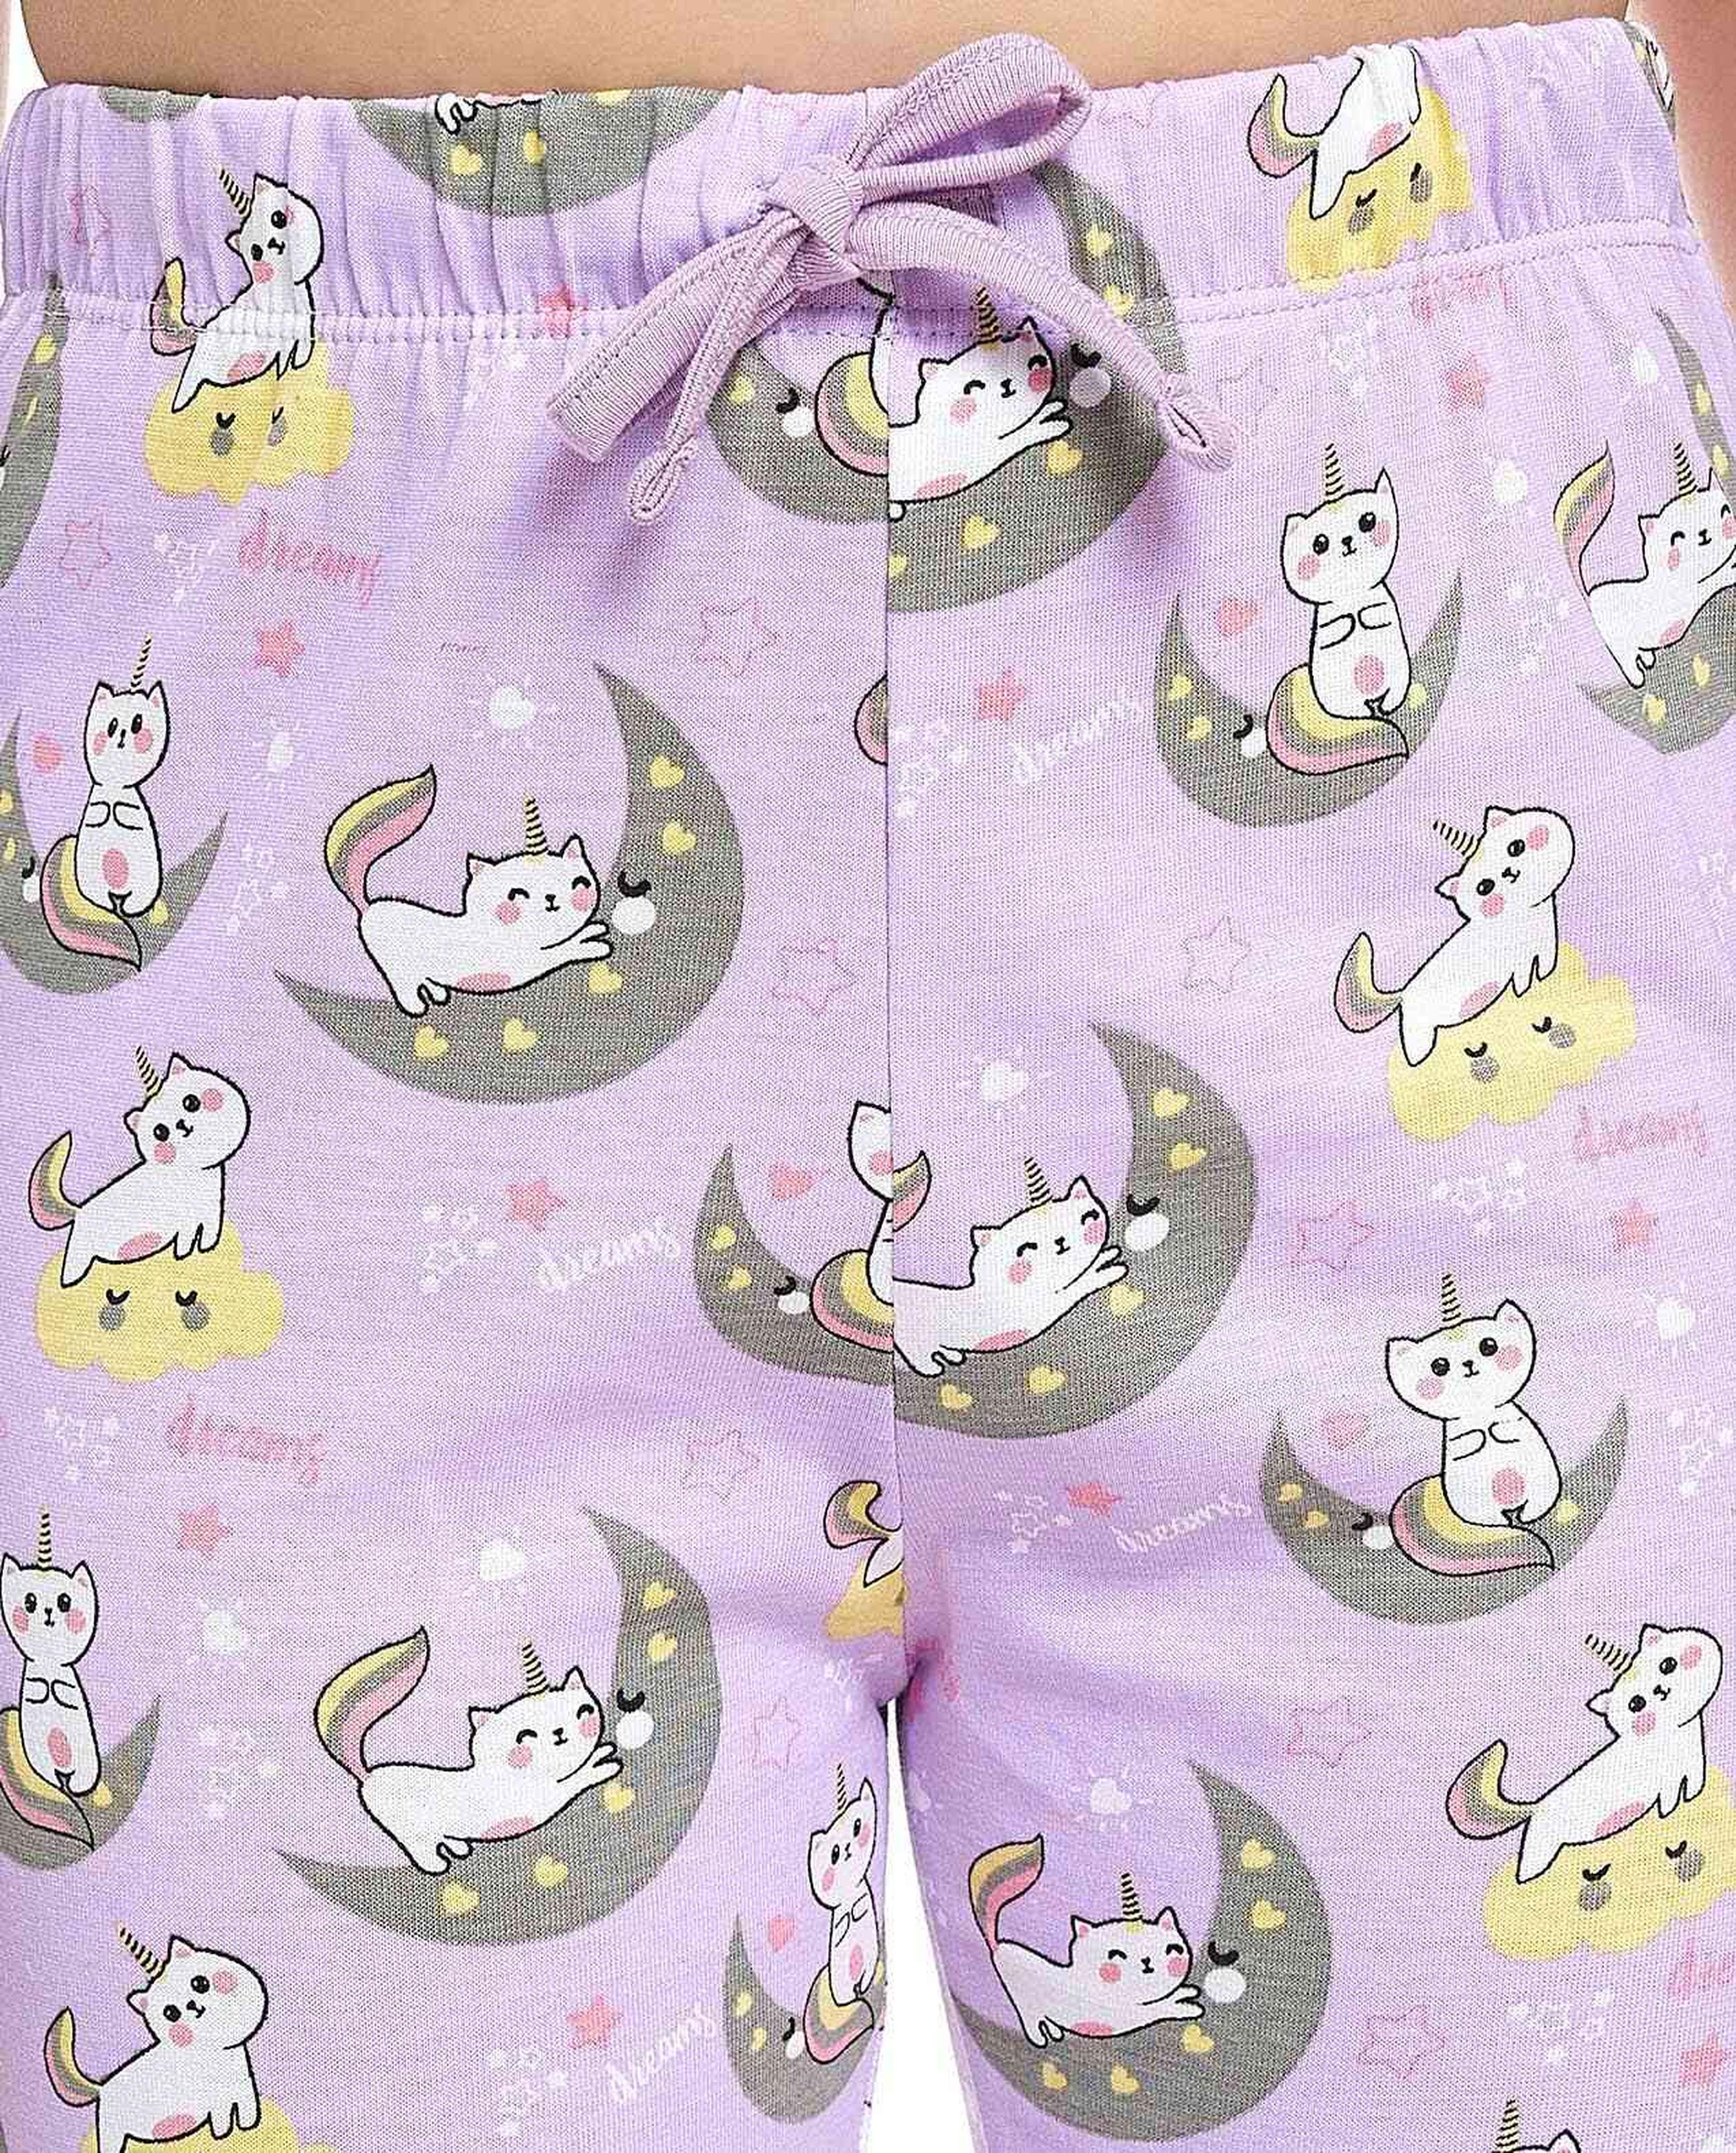 All Over Print Pyjama Set